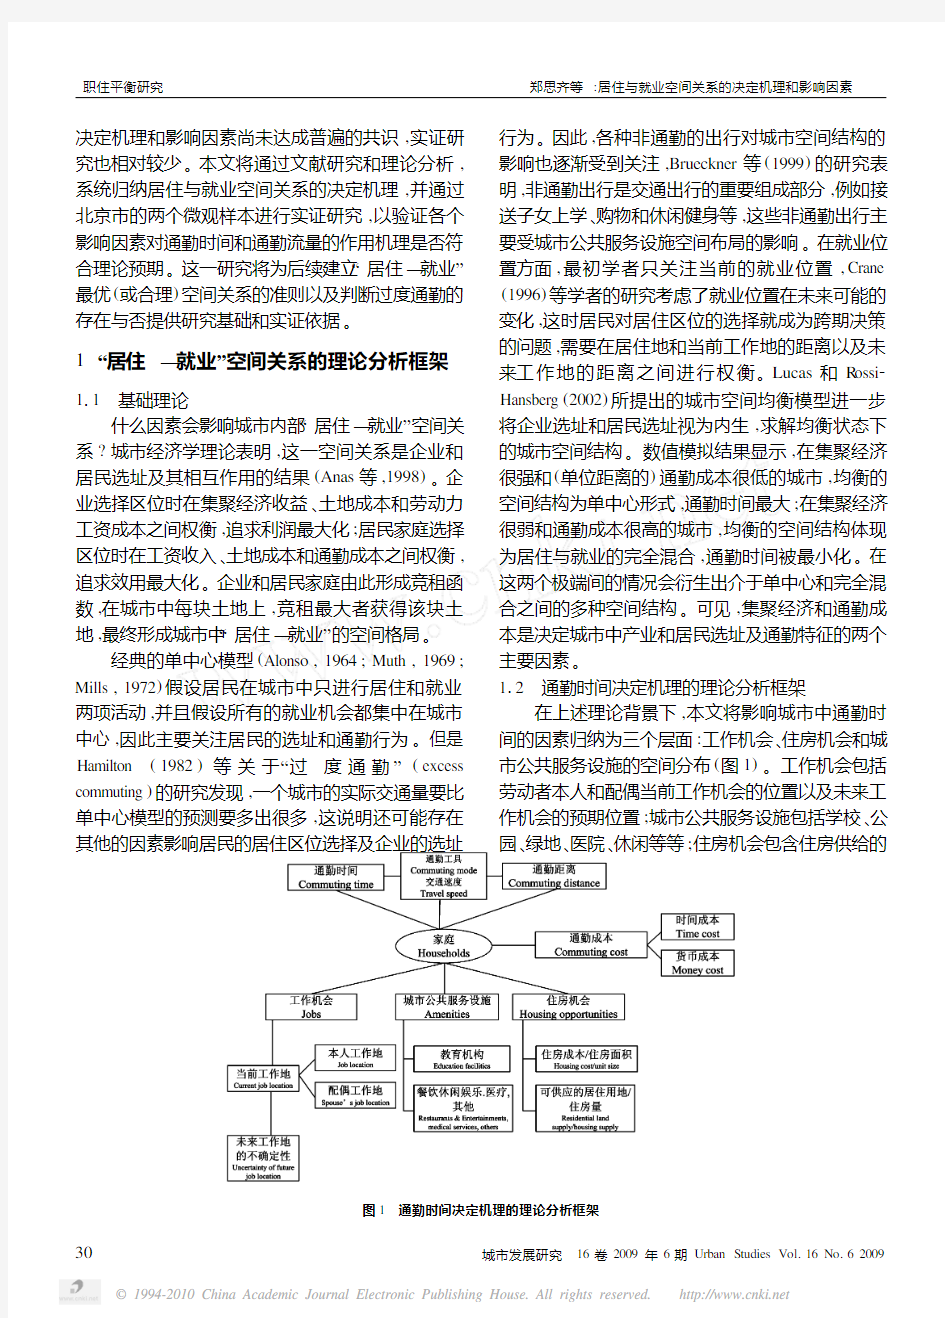 w063居住与就业空间关系的决定机理和影响因素_对北京市通勤时间和通勤流量的实证研究